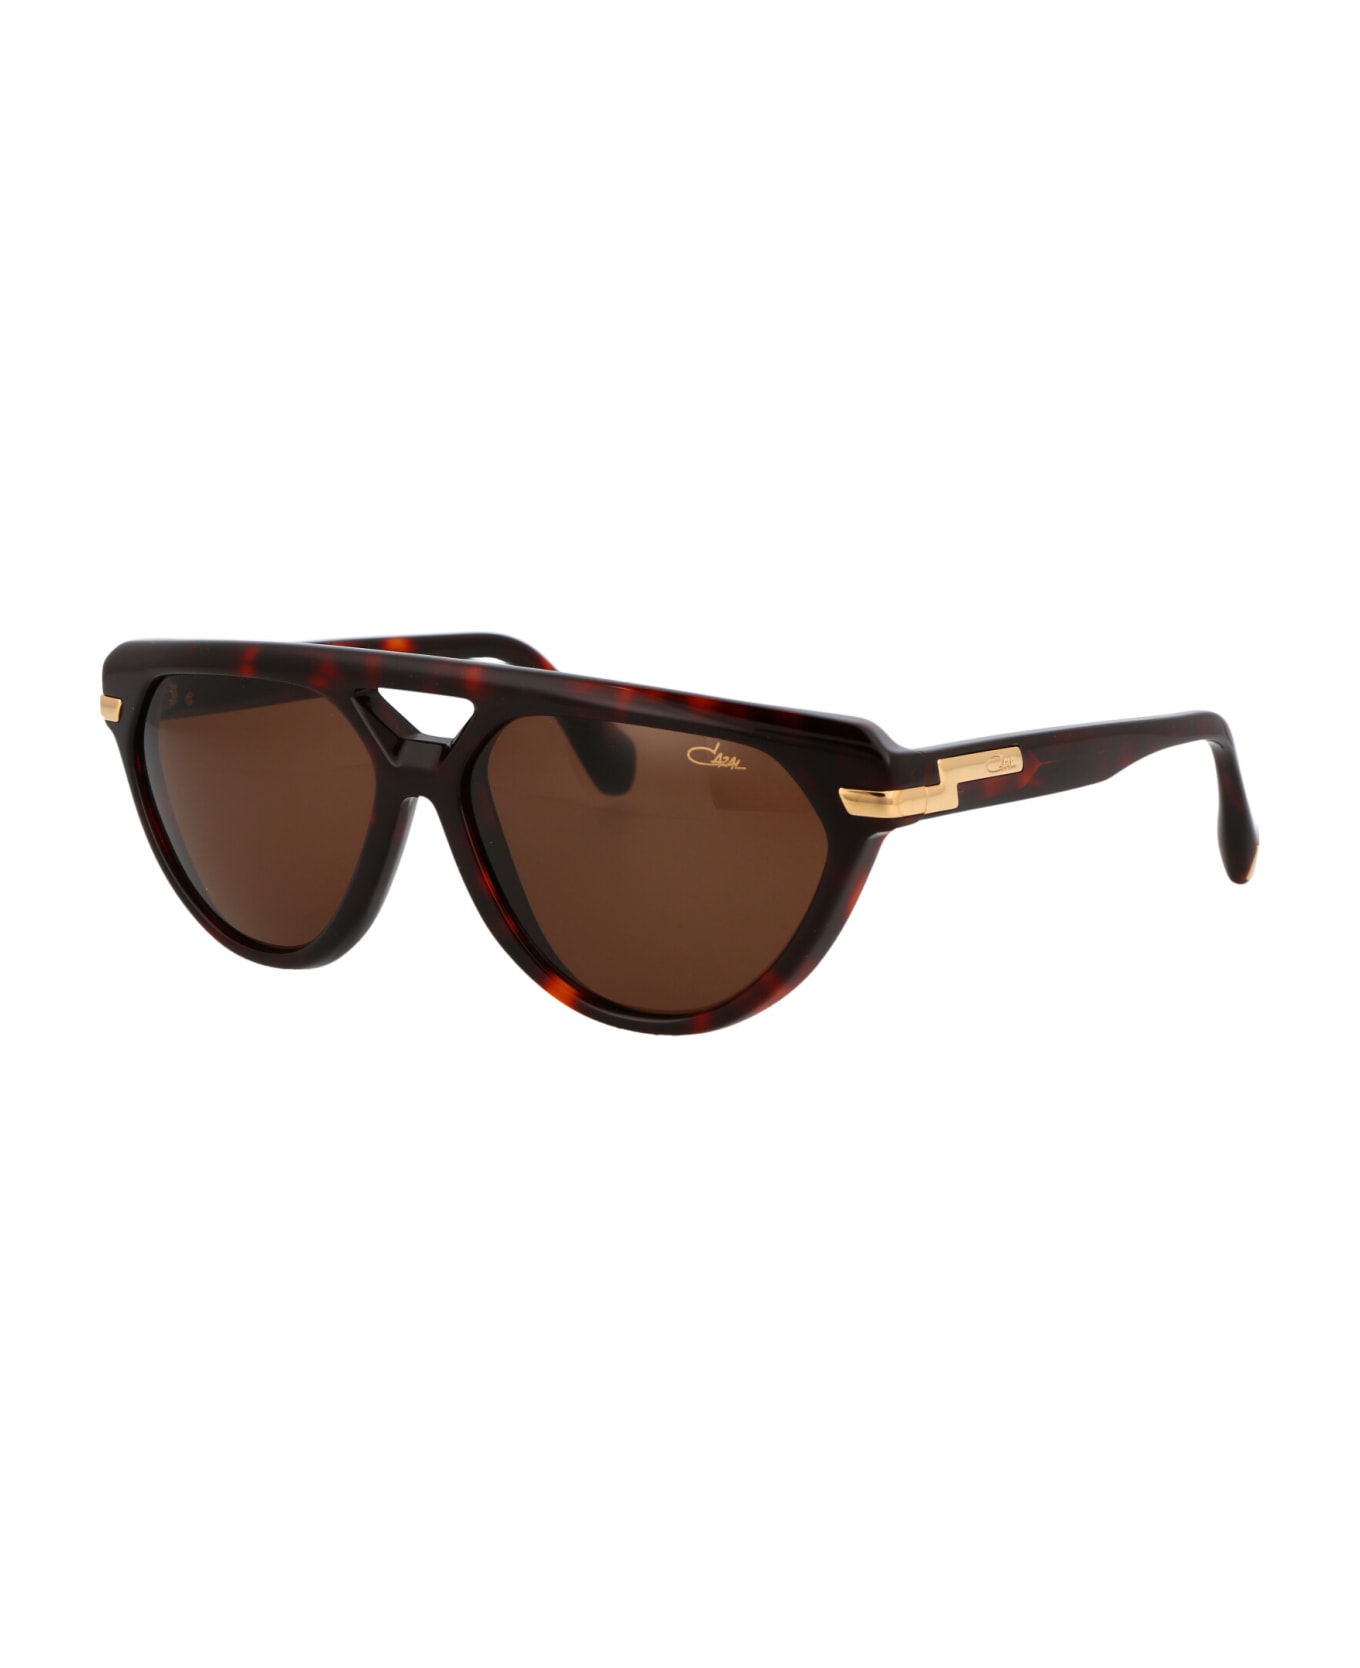 Cazal Mod. 8503 Sunglasses - 002 HAVANA サングラス